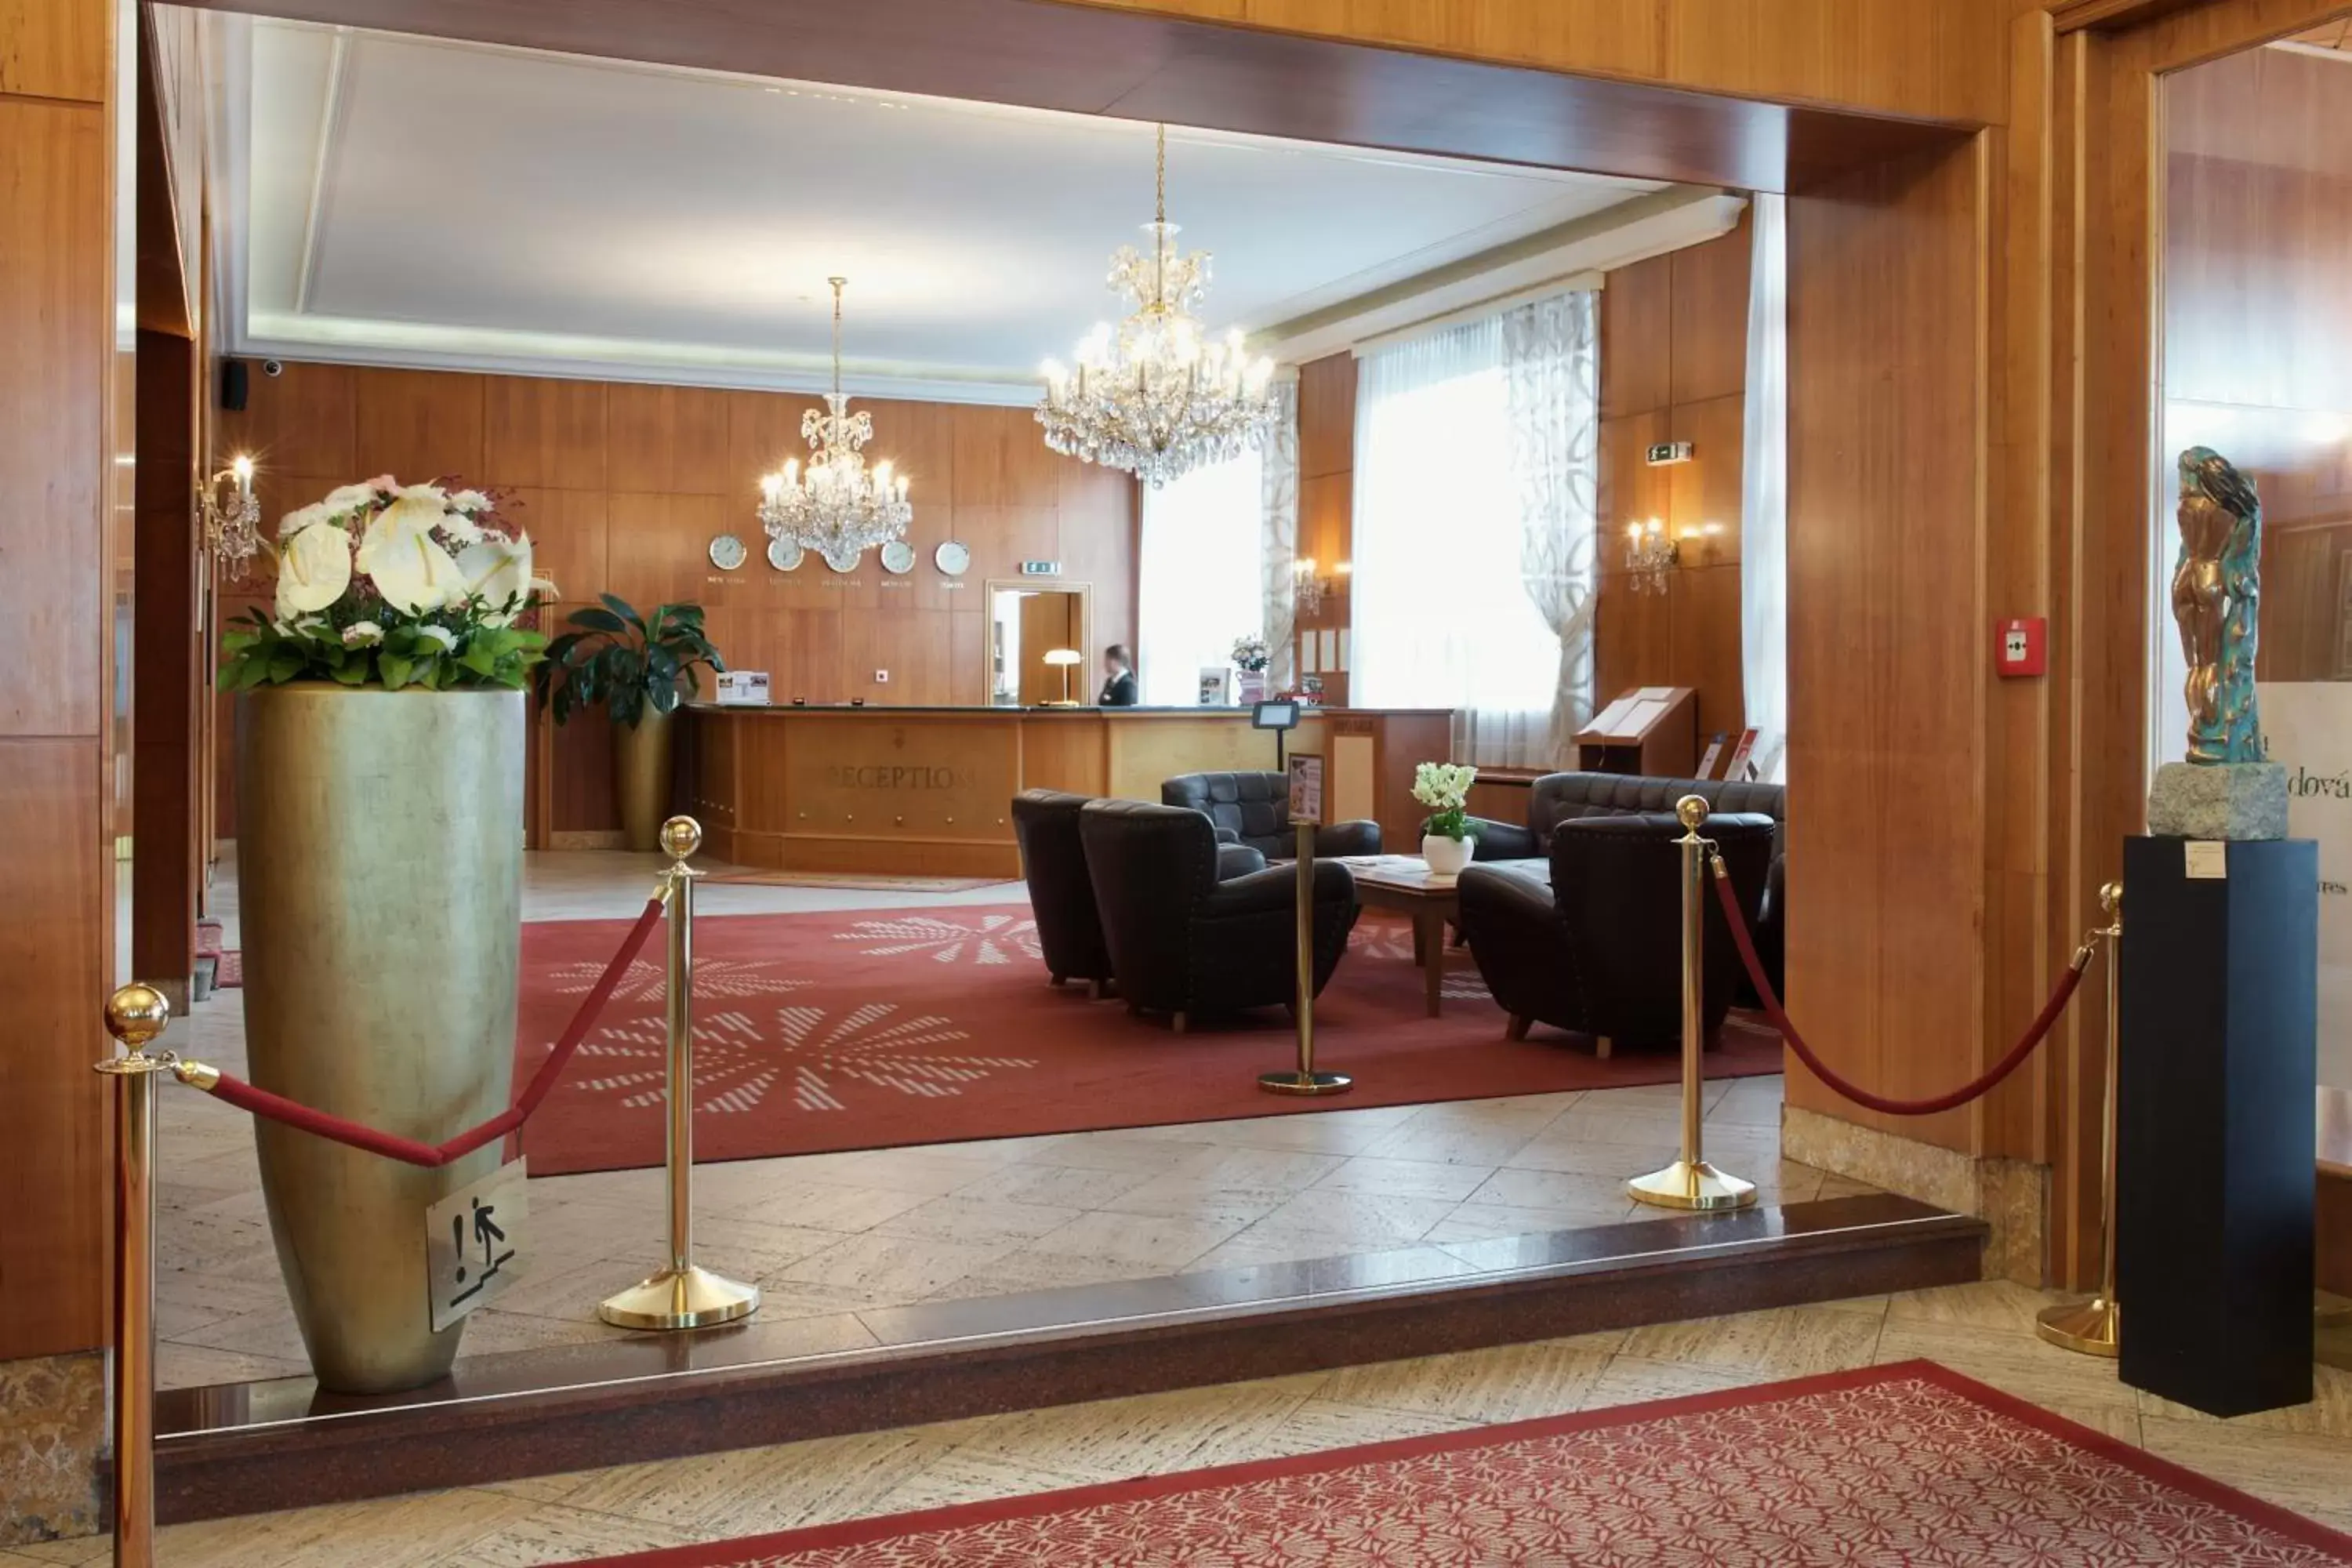 Lobby or reception, Lobby/Reception in Hotel Devín